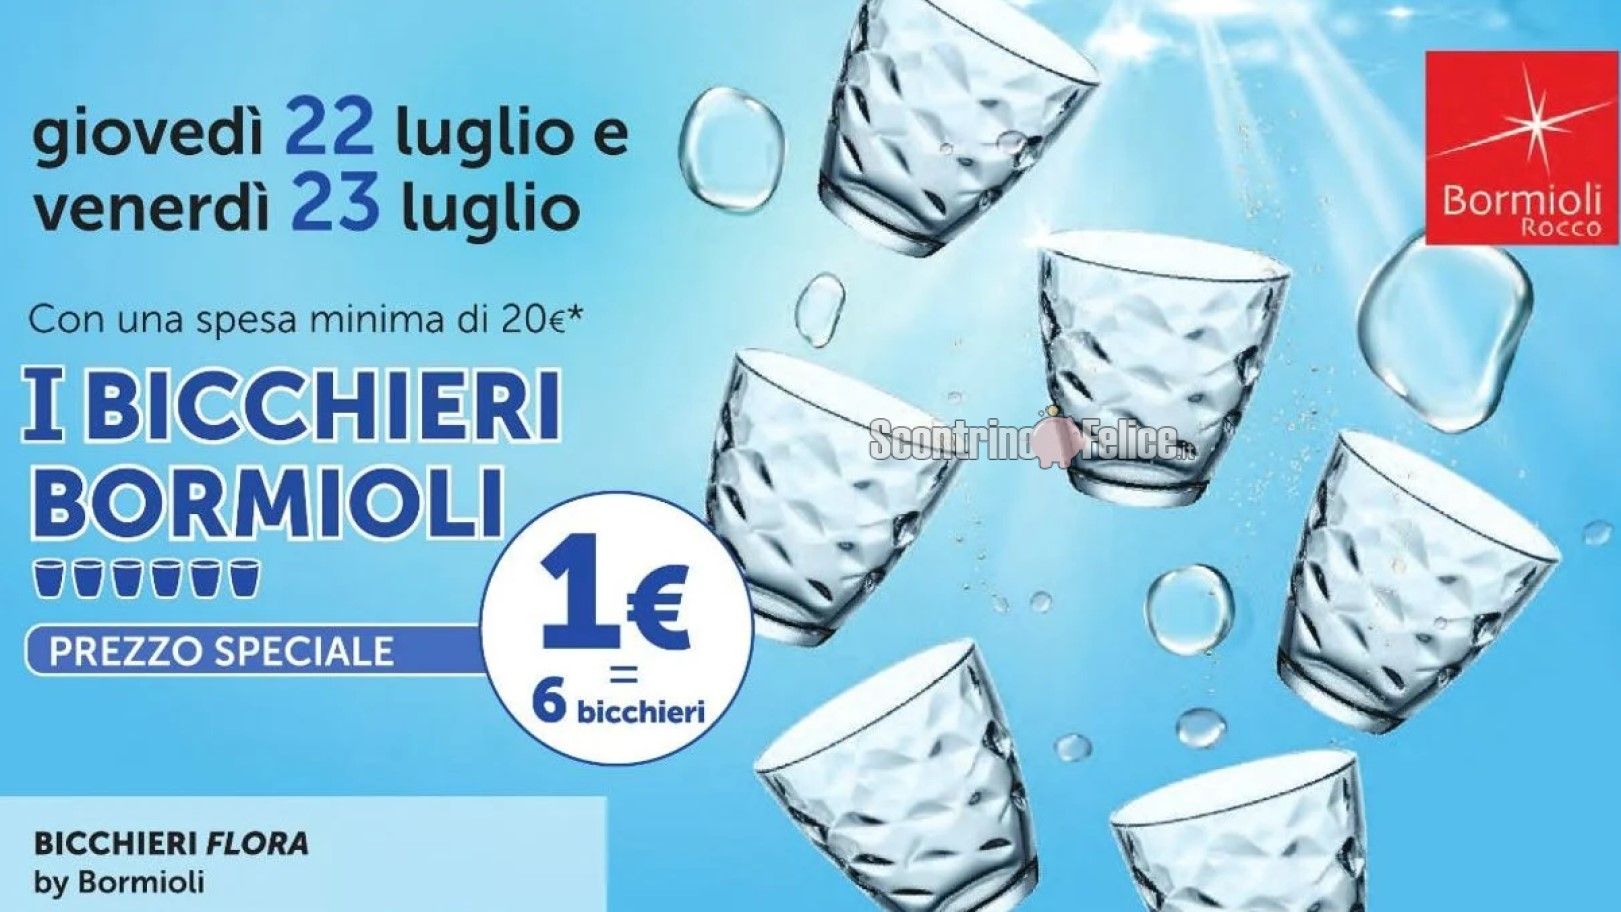 6 bicchieri bormioli flora a 1 euro da tigotà